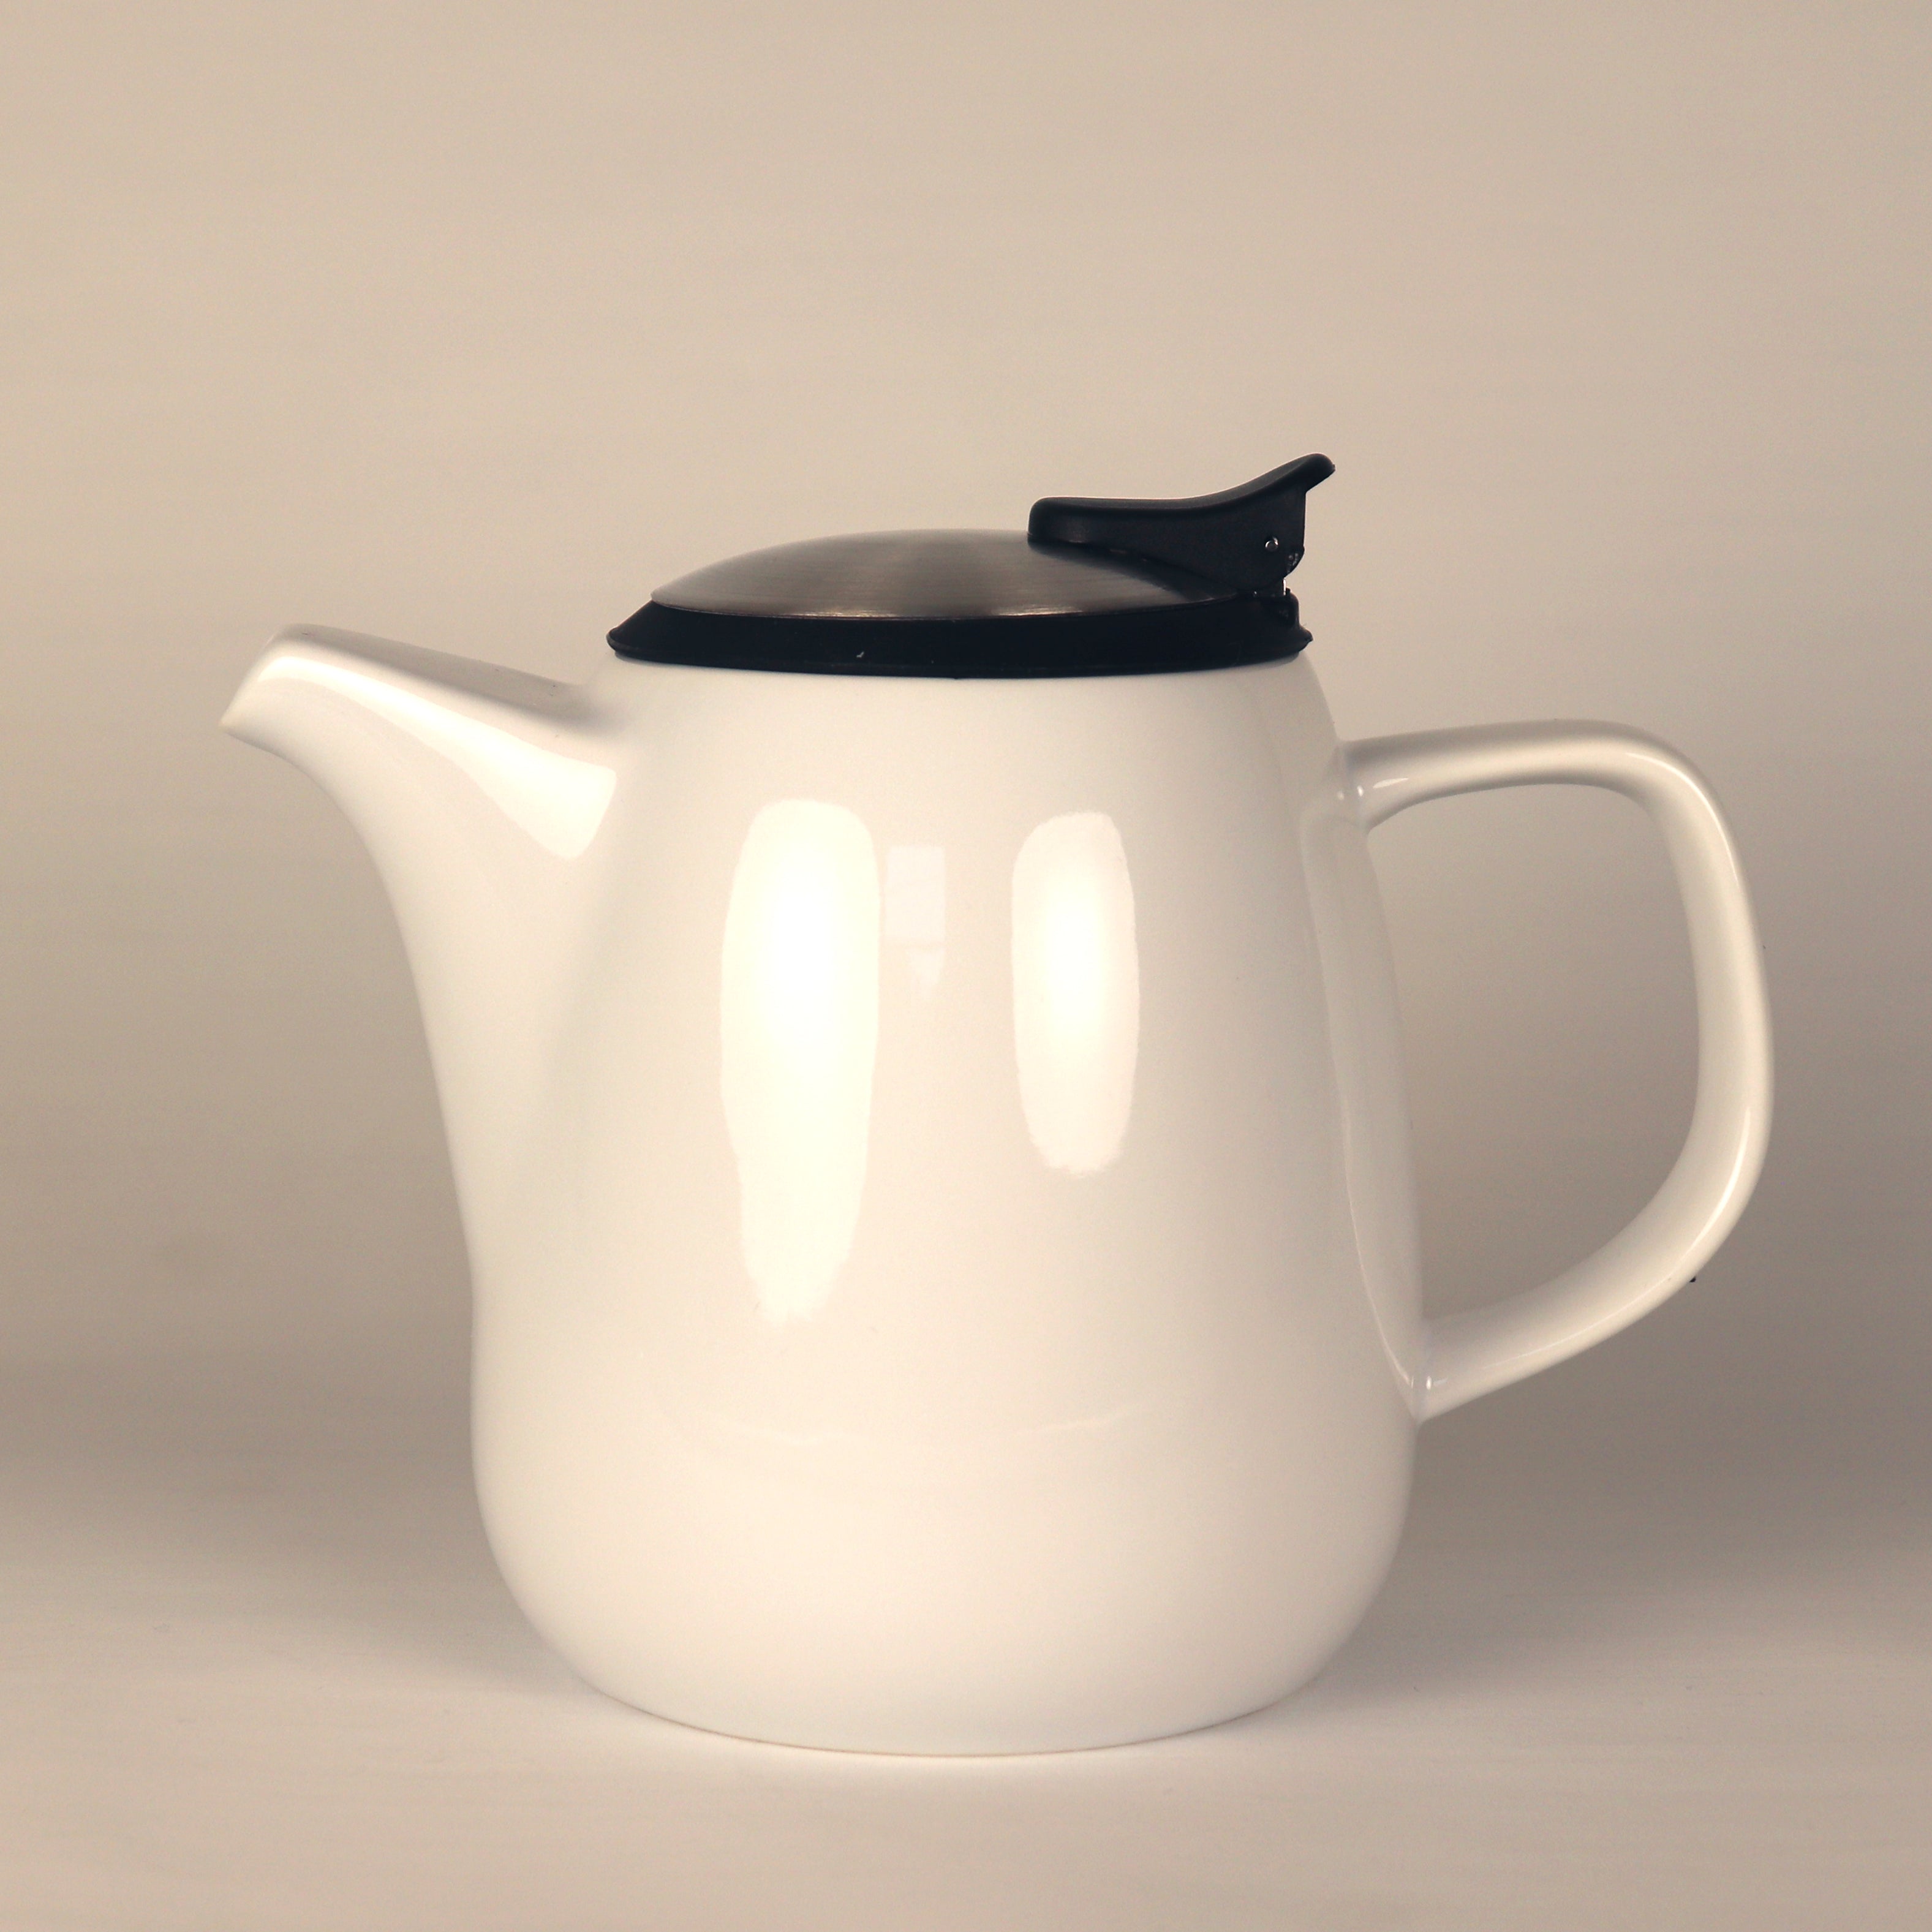 DAZE teapot 27oz ceramic